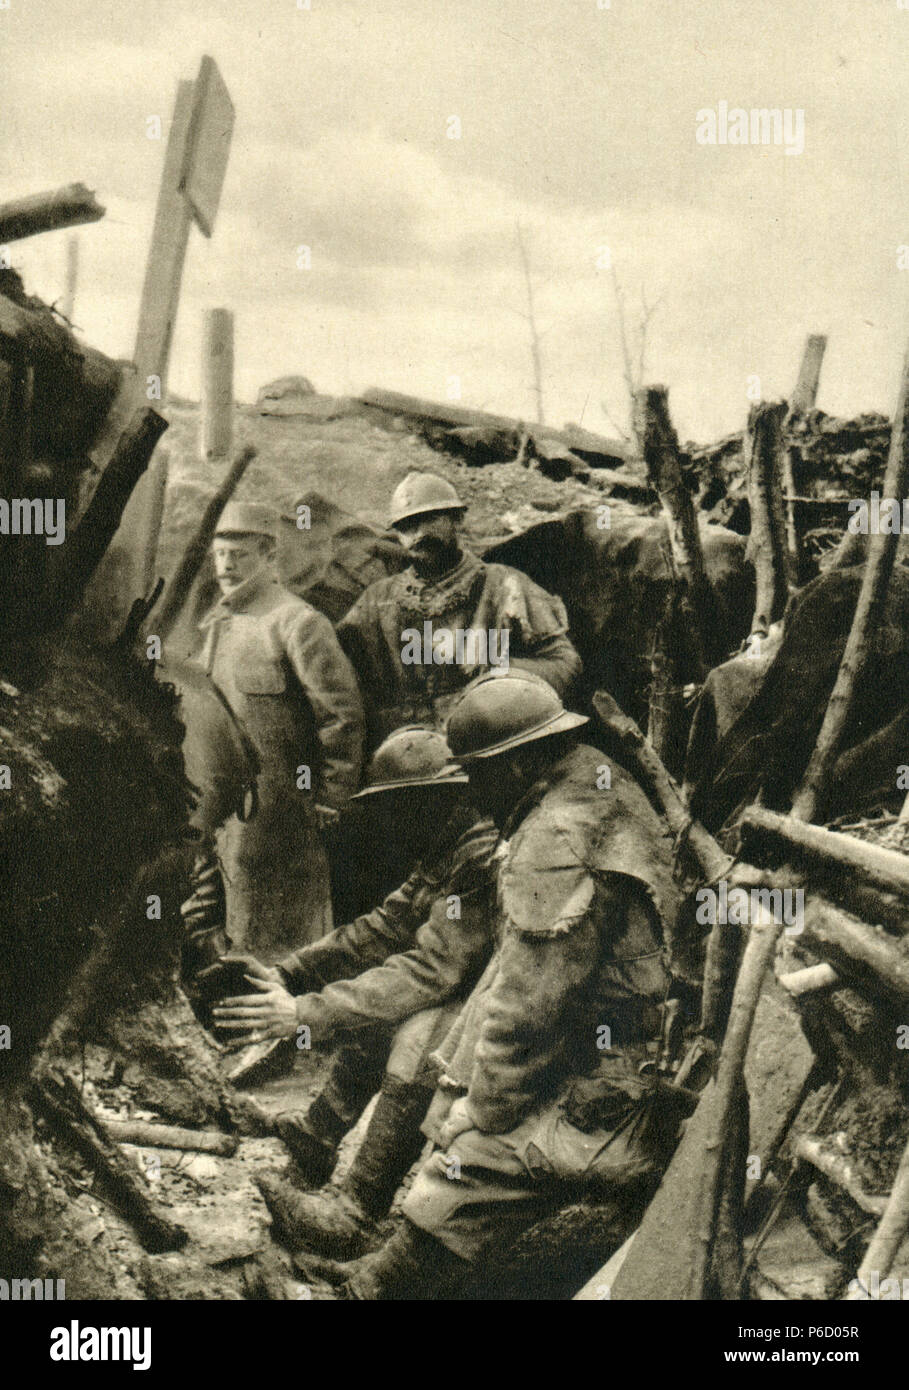 La première guerre mondiale, tranchées, soldats français, ww1, la première guerre mondiale, la première guerre mondiale Banque D'Images